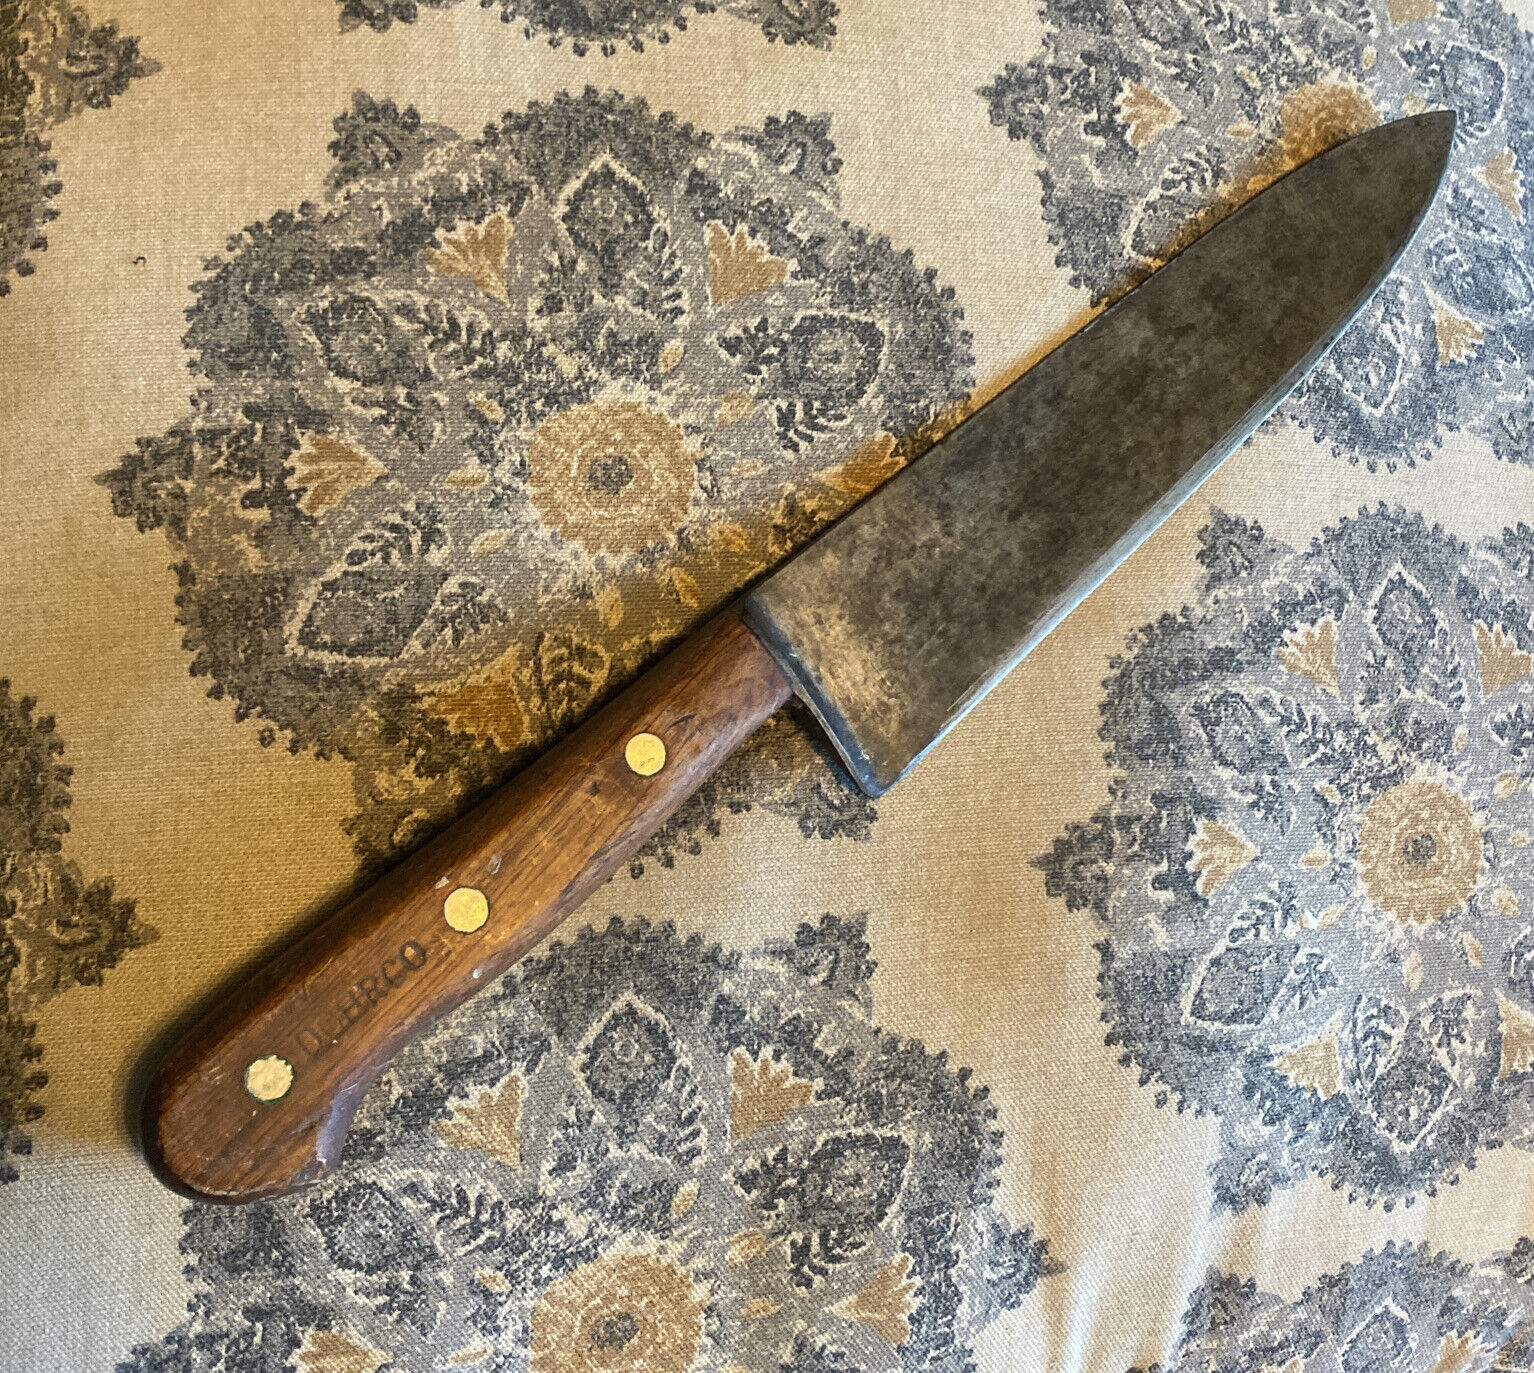 Vintage Dexter Butcher Knife Sharpener 14 